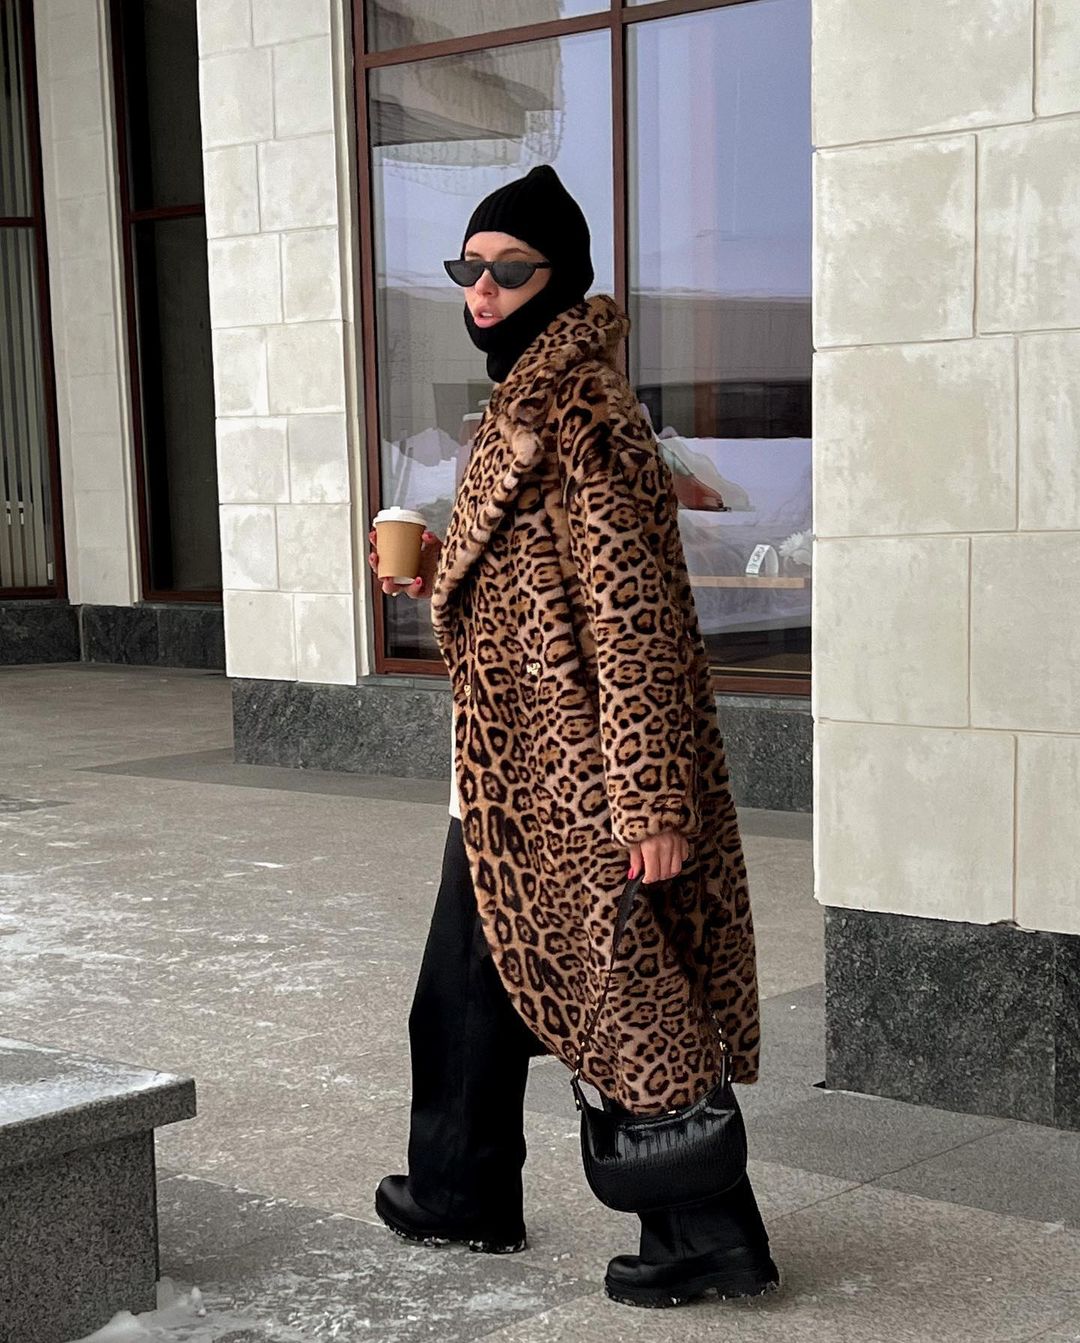 Короткие шорты, черное мини и леопардовая шуба. Эти и другие смелые образы примерили девушки Владимира для демонстрации в своих социальных сетях.